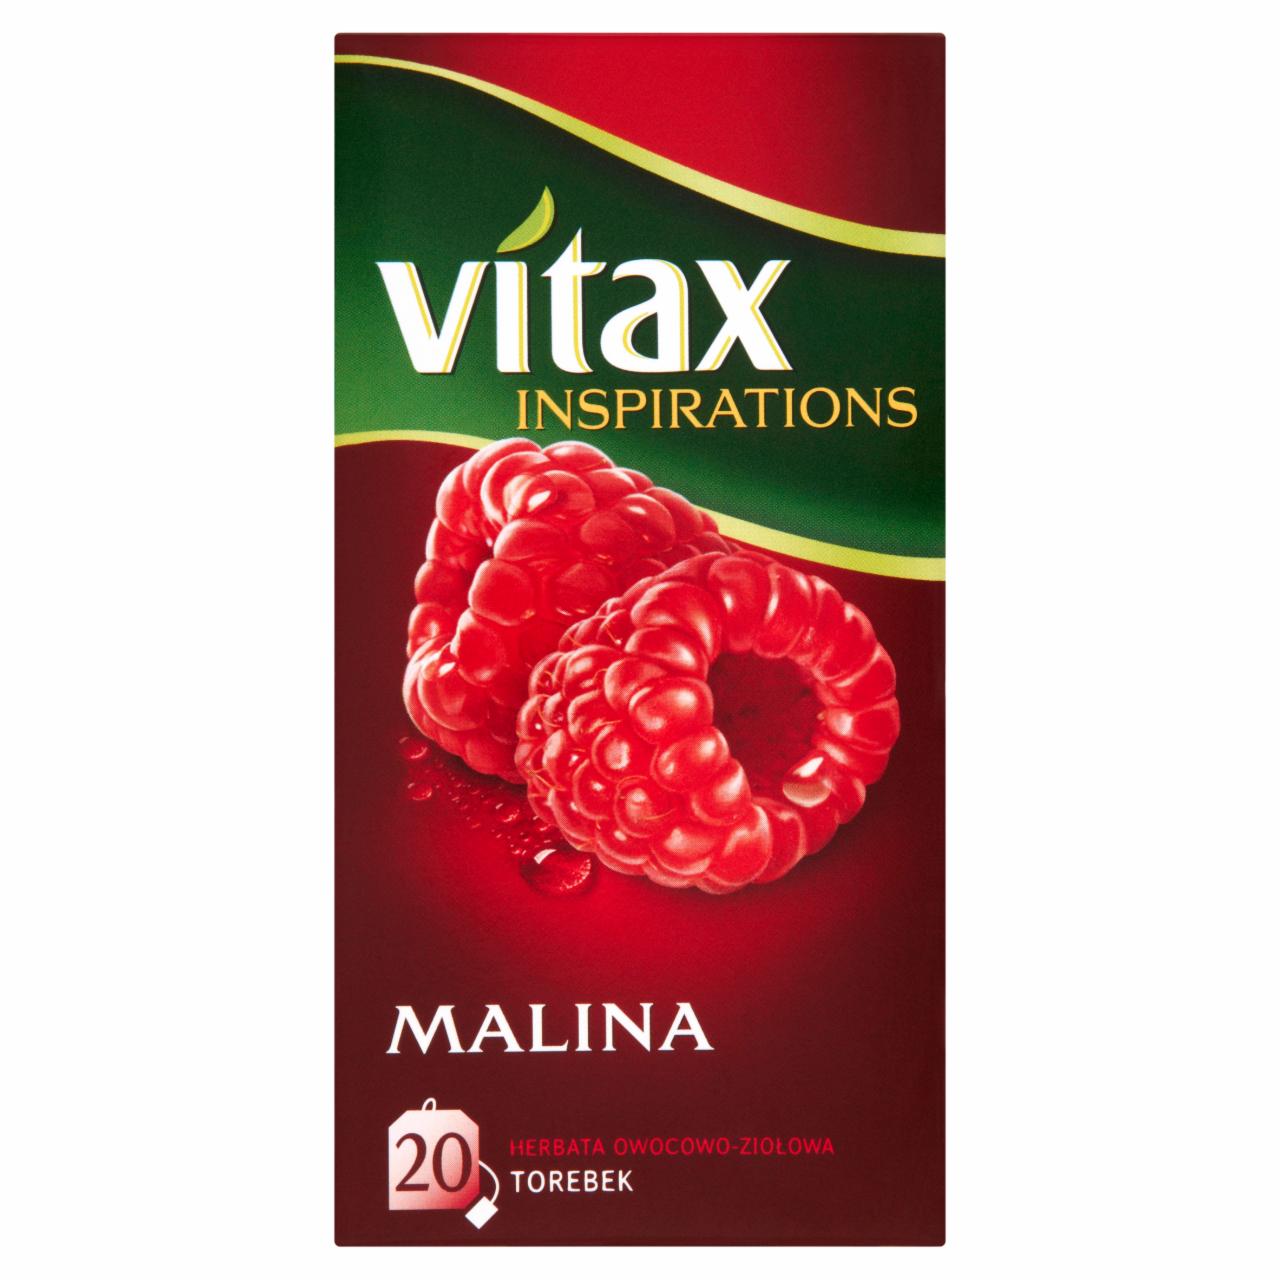 Zdjęcia - Vitax Inspiracje Herbatka owocowo-ziołowa aromatyzowana o smaku maliny 40 g (20 x 2 g)